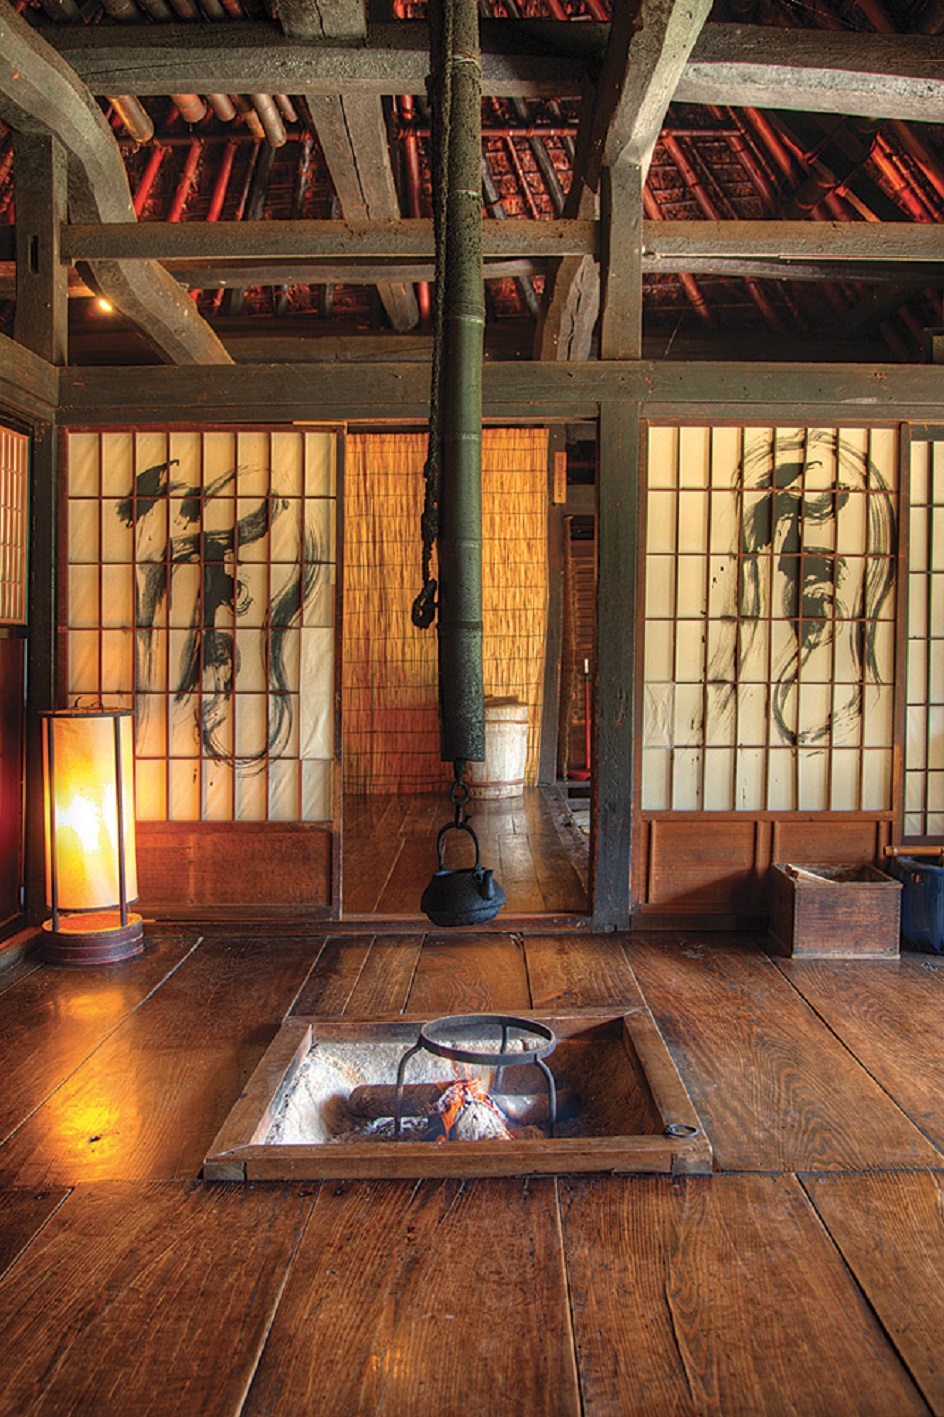 Японский стиль в интерьере: частичка философии Дзэн в доме